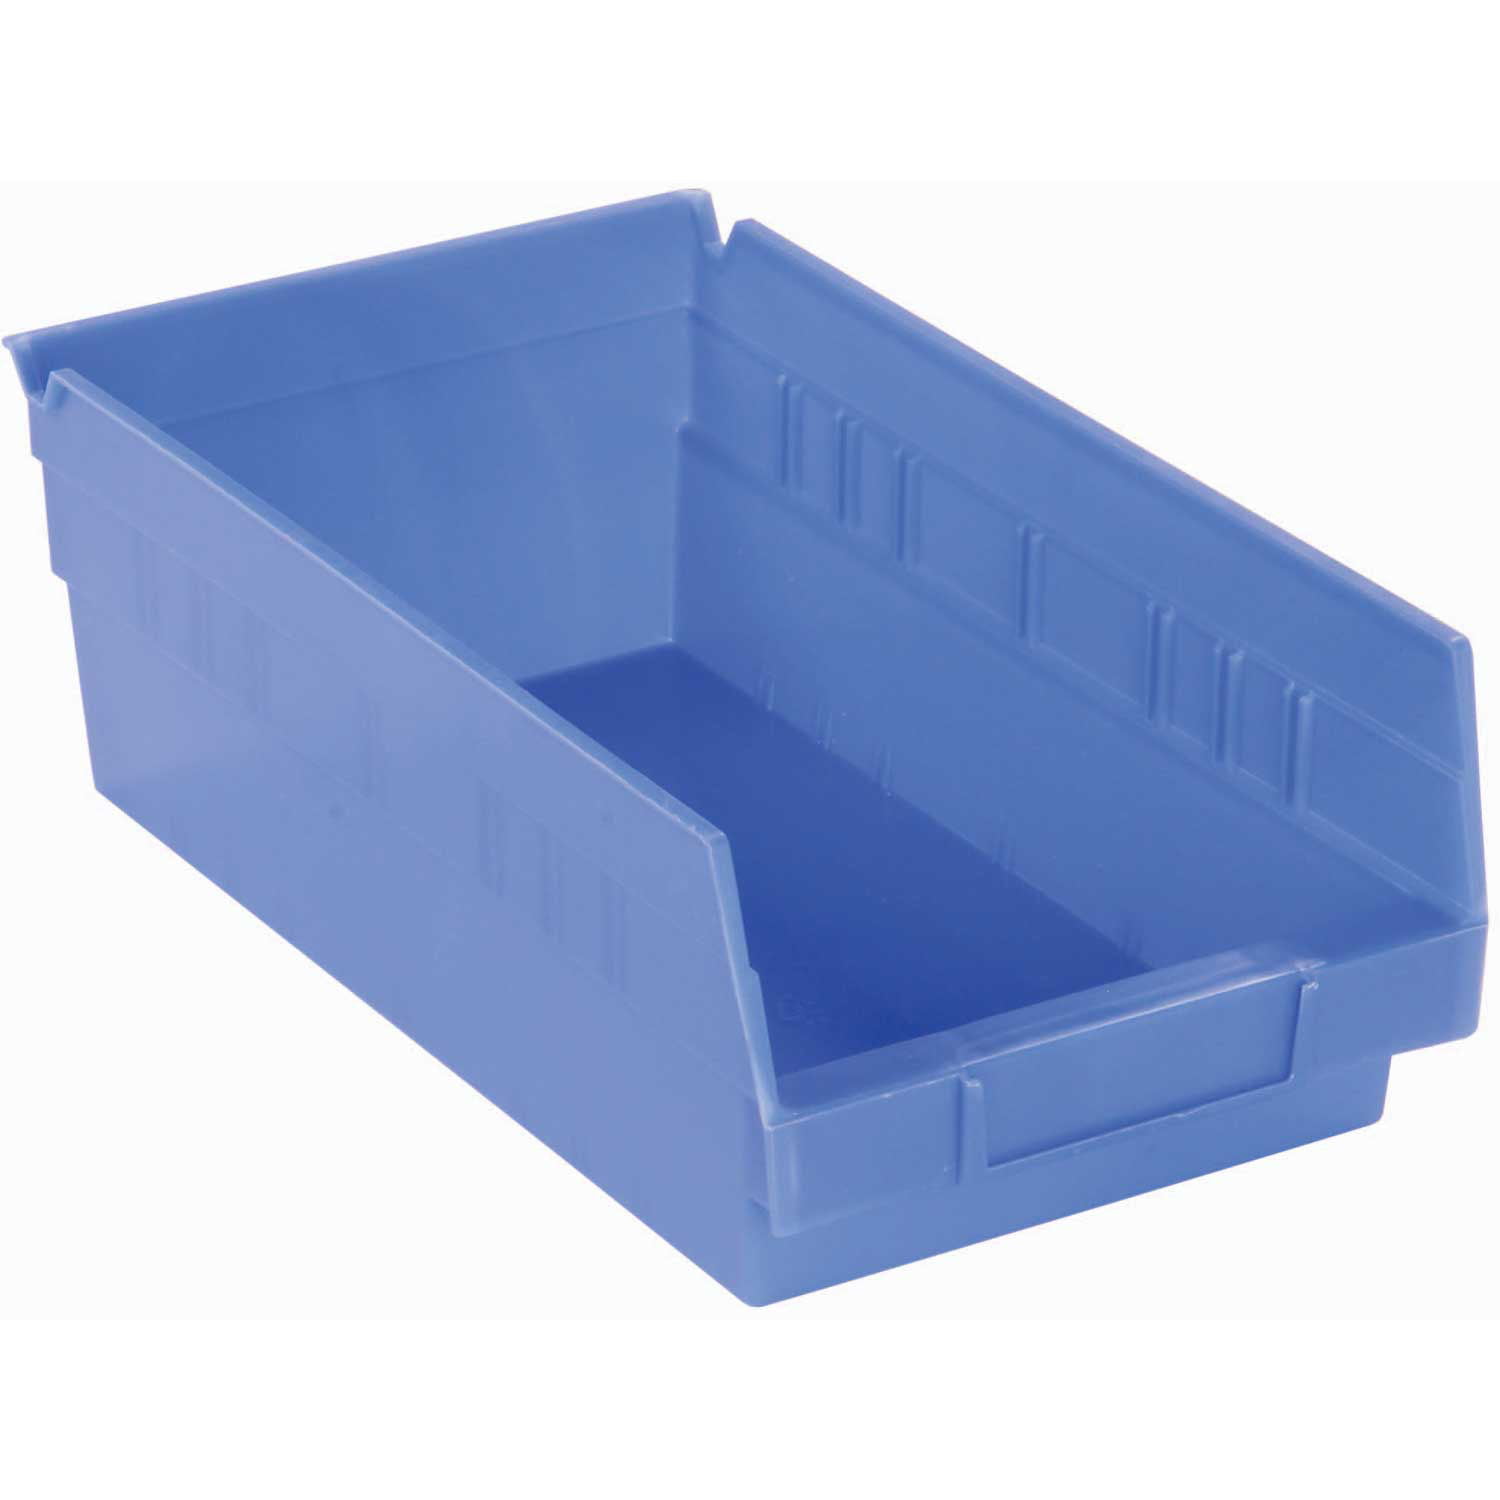 Plastic Shelf Bin Nestable 4-1/8"W x 23-5/8" D x 4"H Blue Lot of 12 